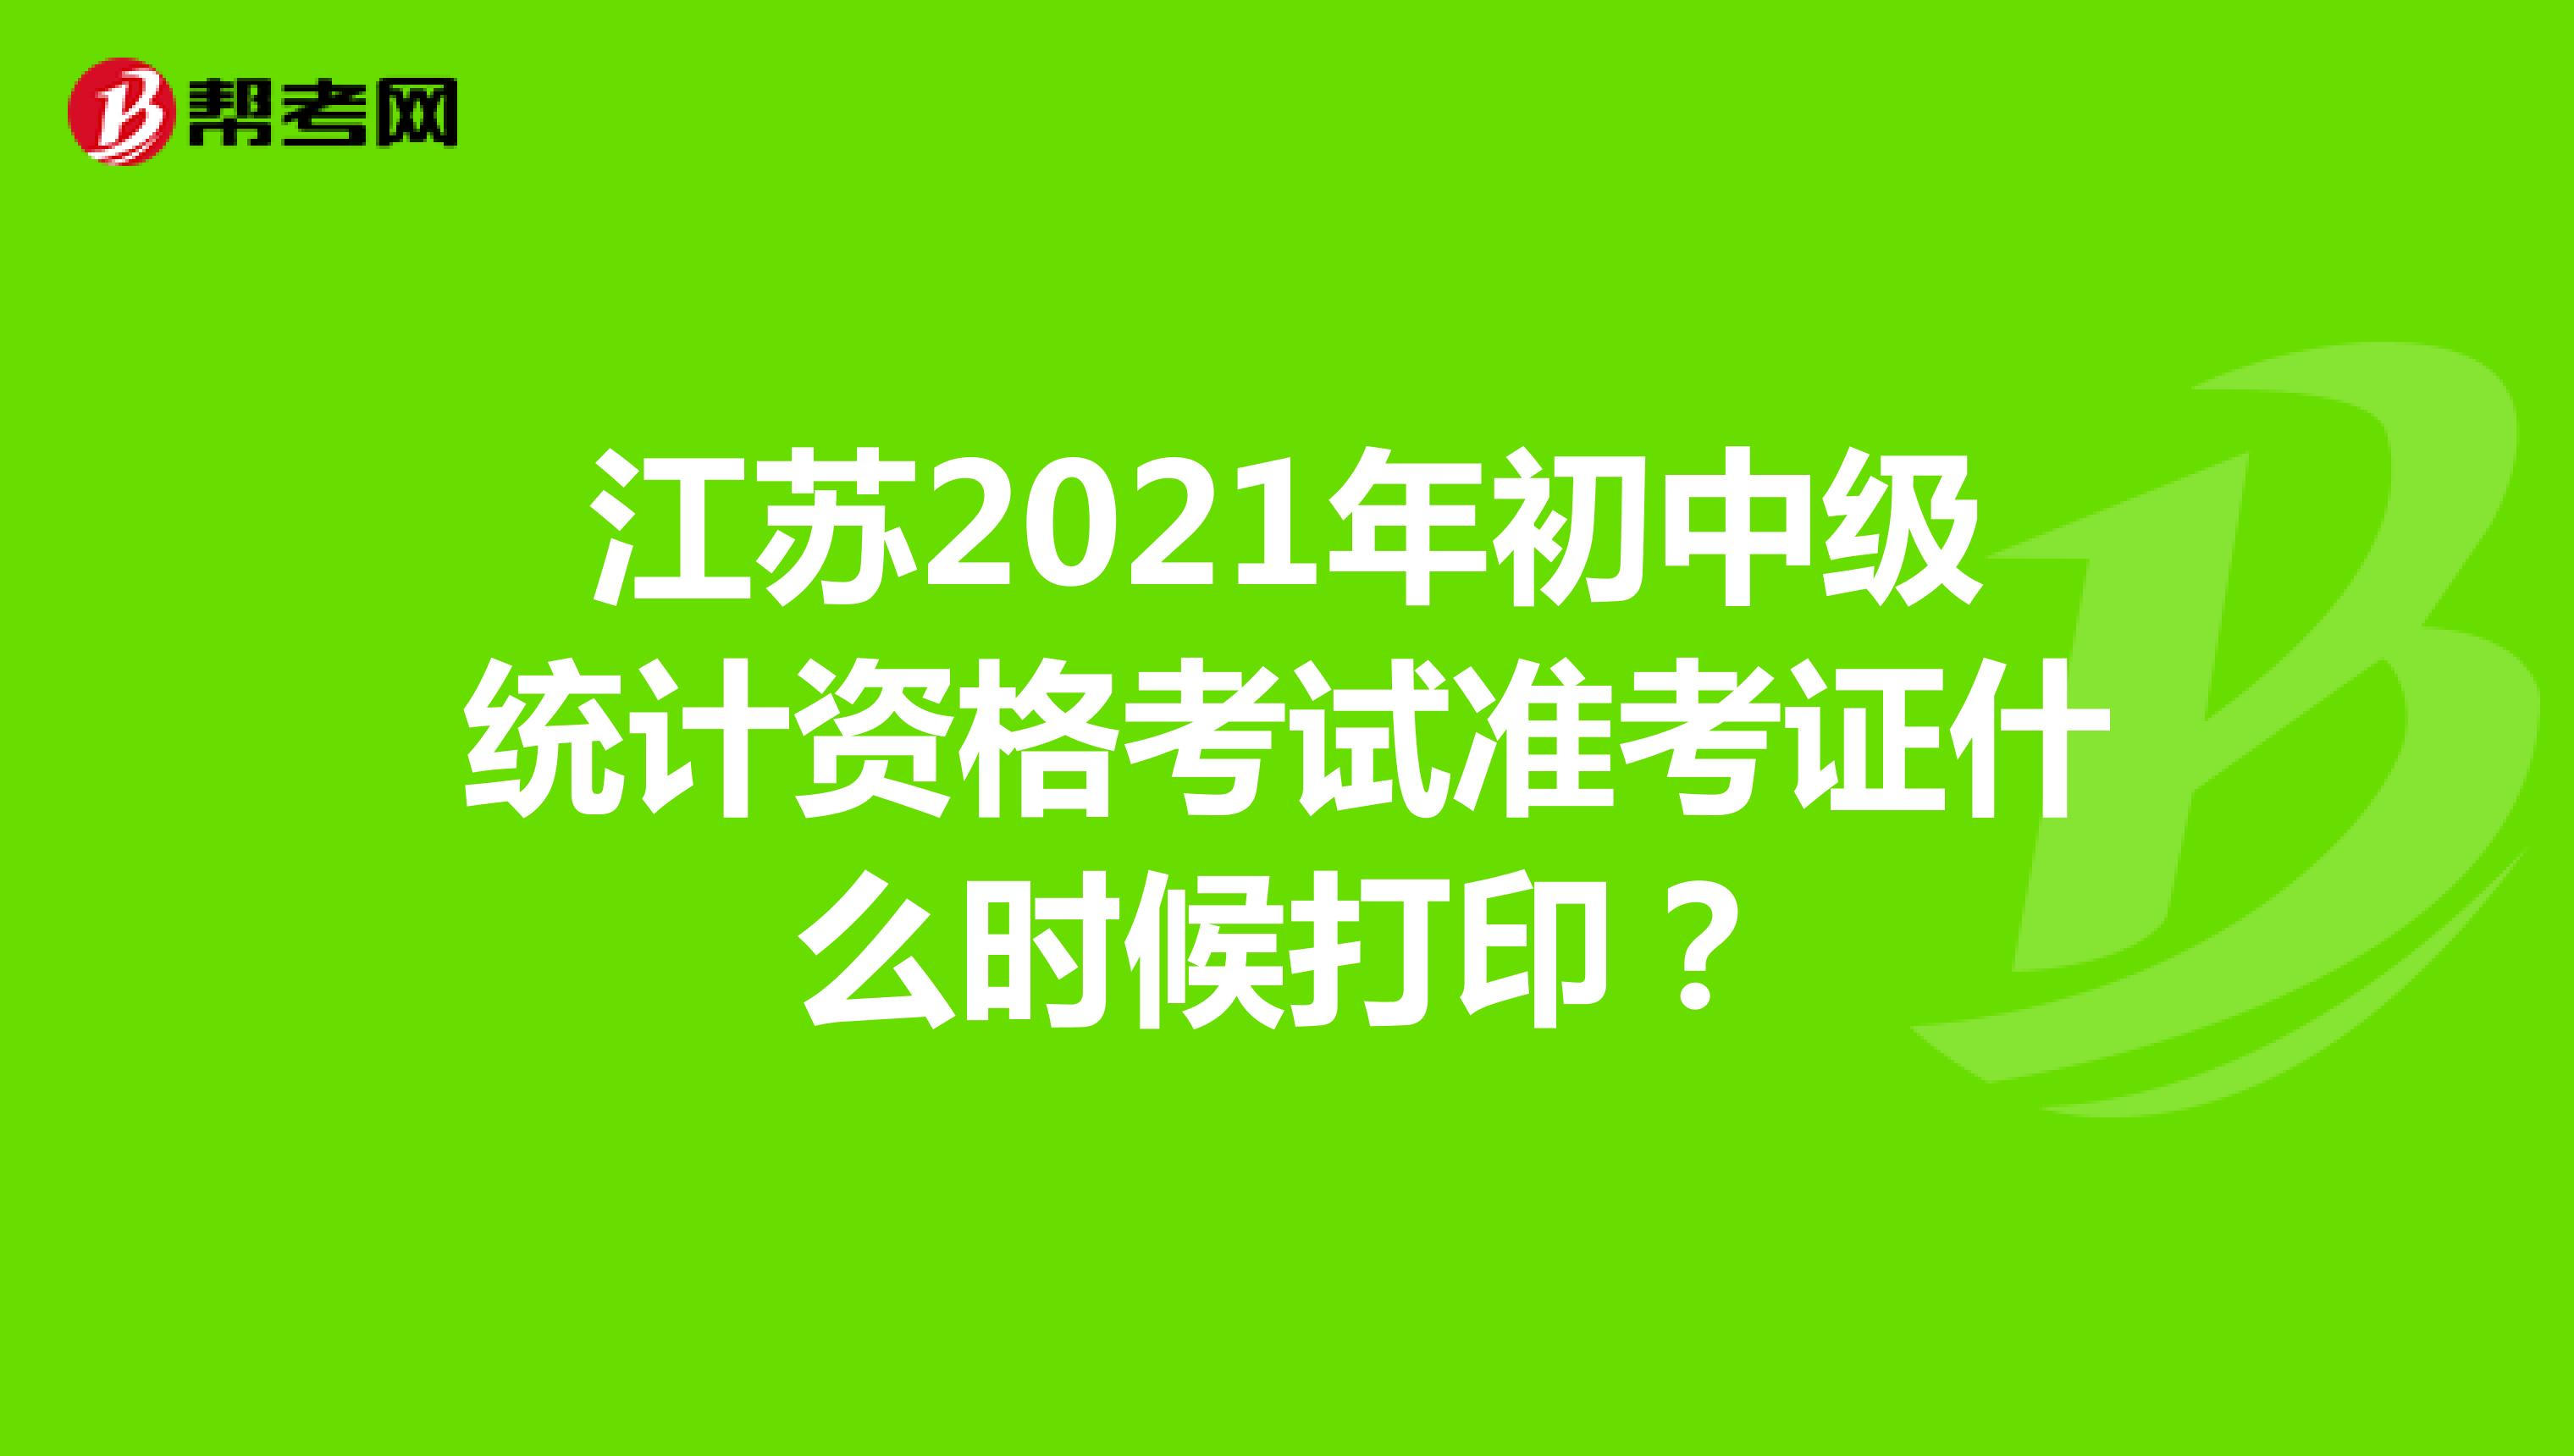 江苏2021年初中级统计资格考试准考证什么时候打印？